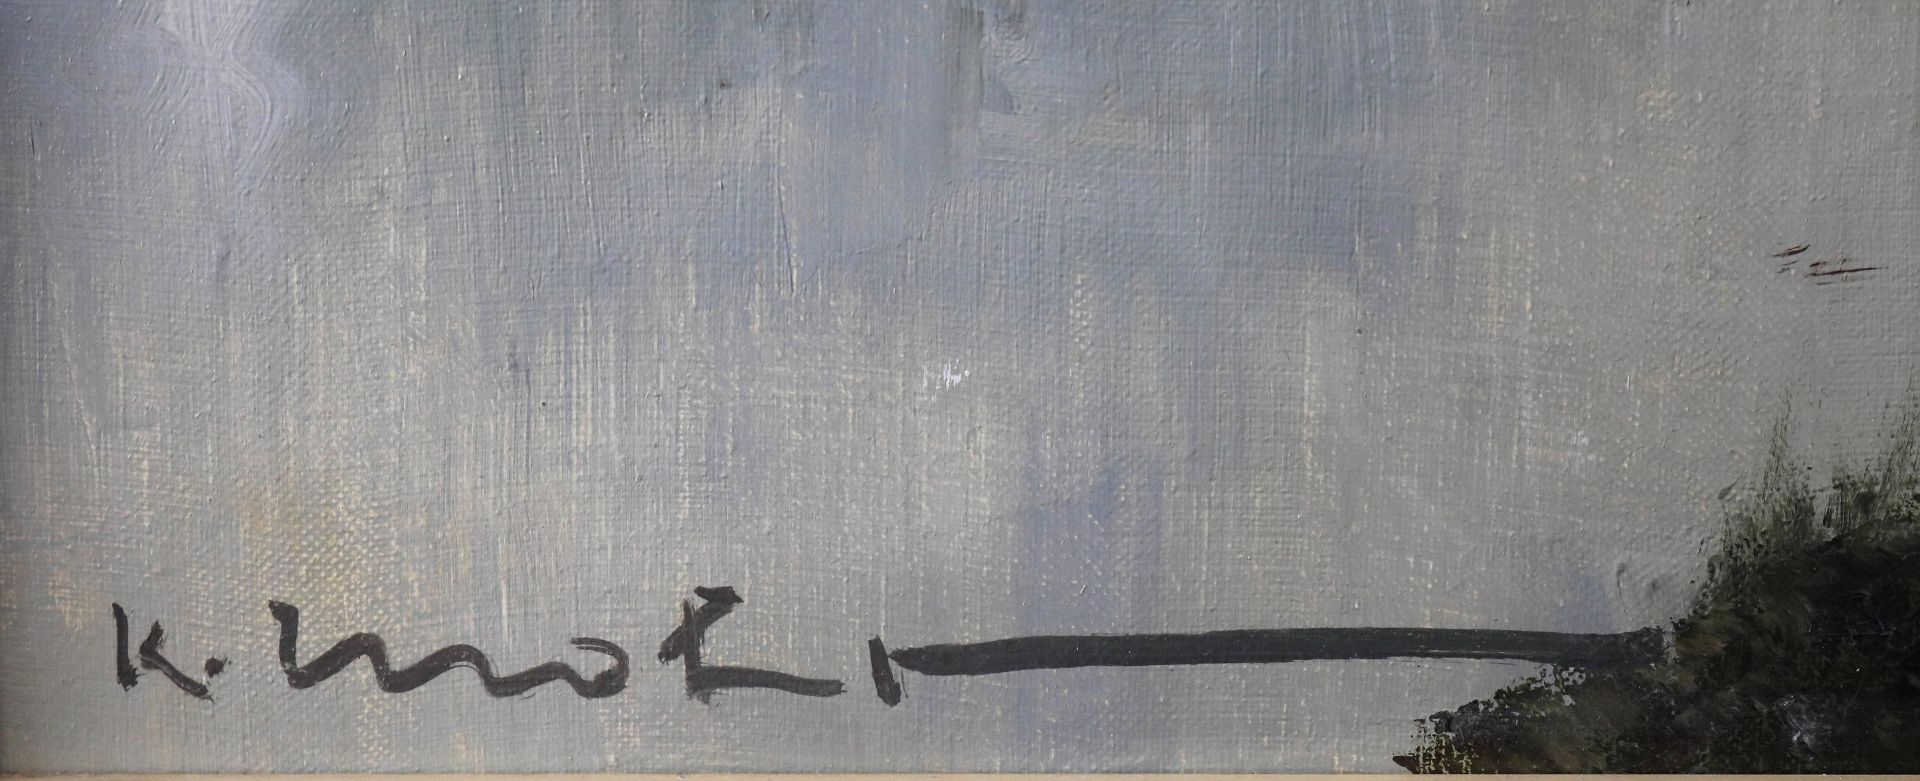 Karl Mohr *1922 Düsseldorf - 2013, "Parforcejagd", Öl/Leinwand, signiert, 44 x 31,5 cm - Bild 4 aus 6